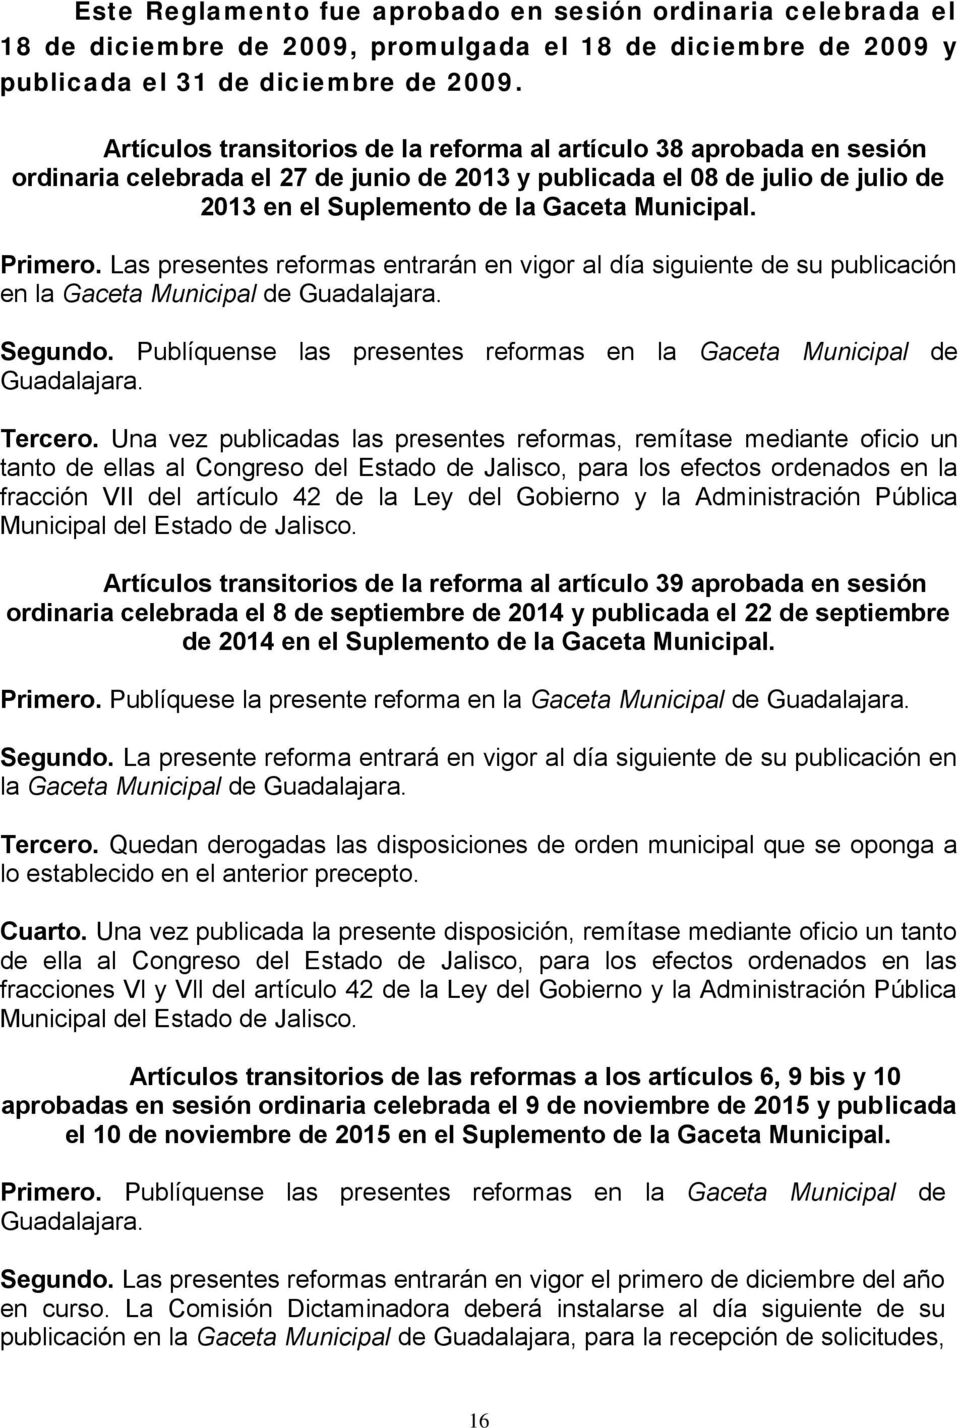 Primero. Las presentes reformas entrarán en vigor al día siguiente de su publicación en la Gaceta Municipal de Guadalajara. Segundo.